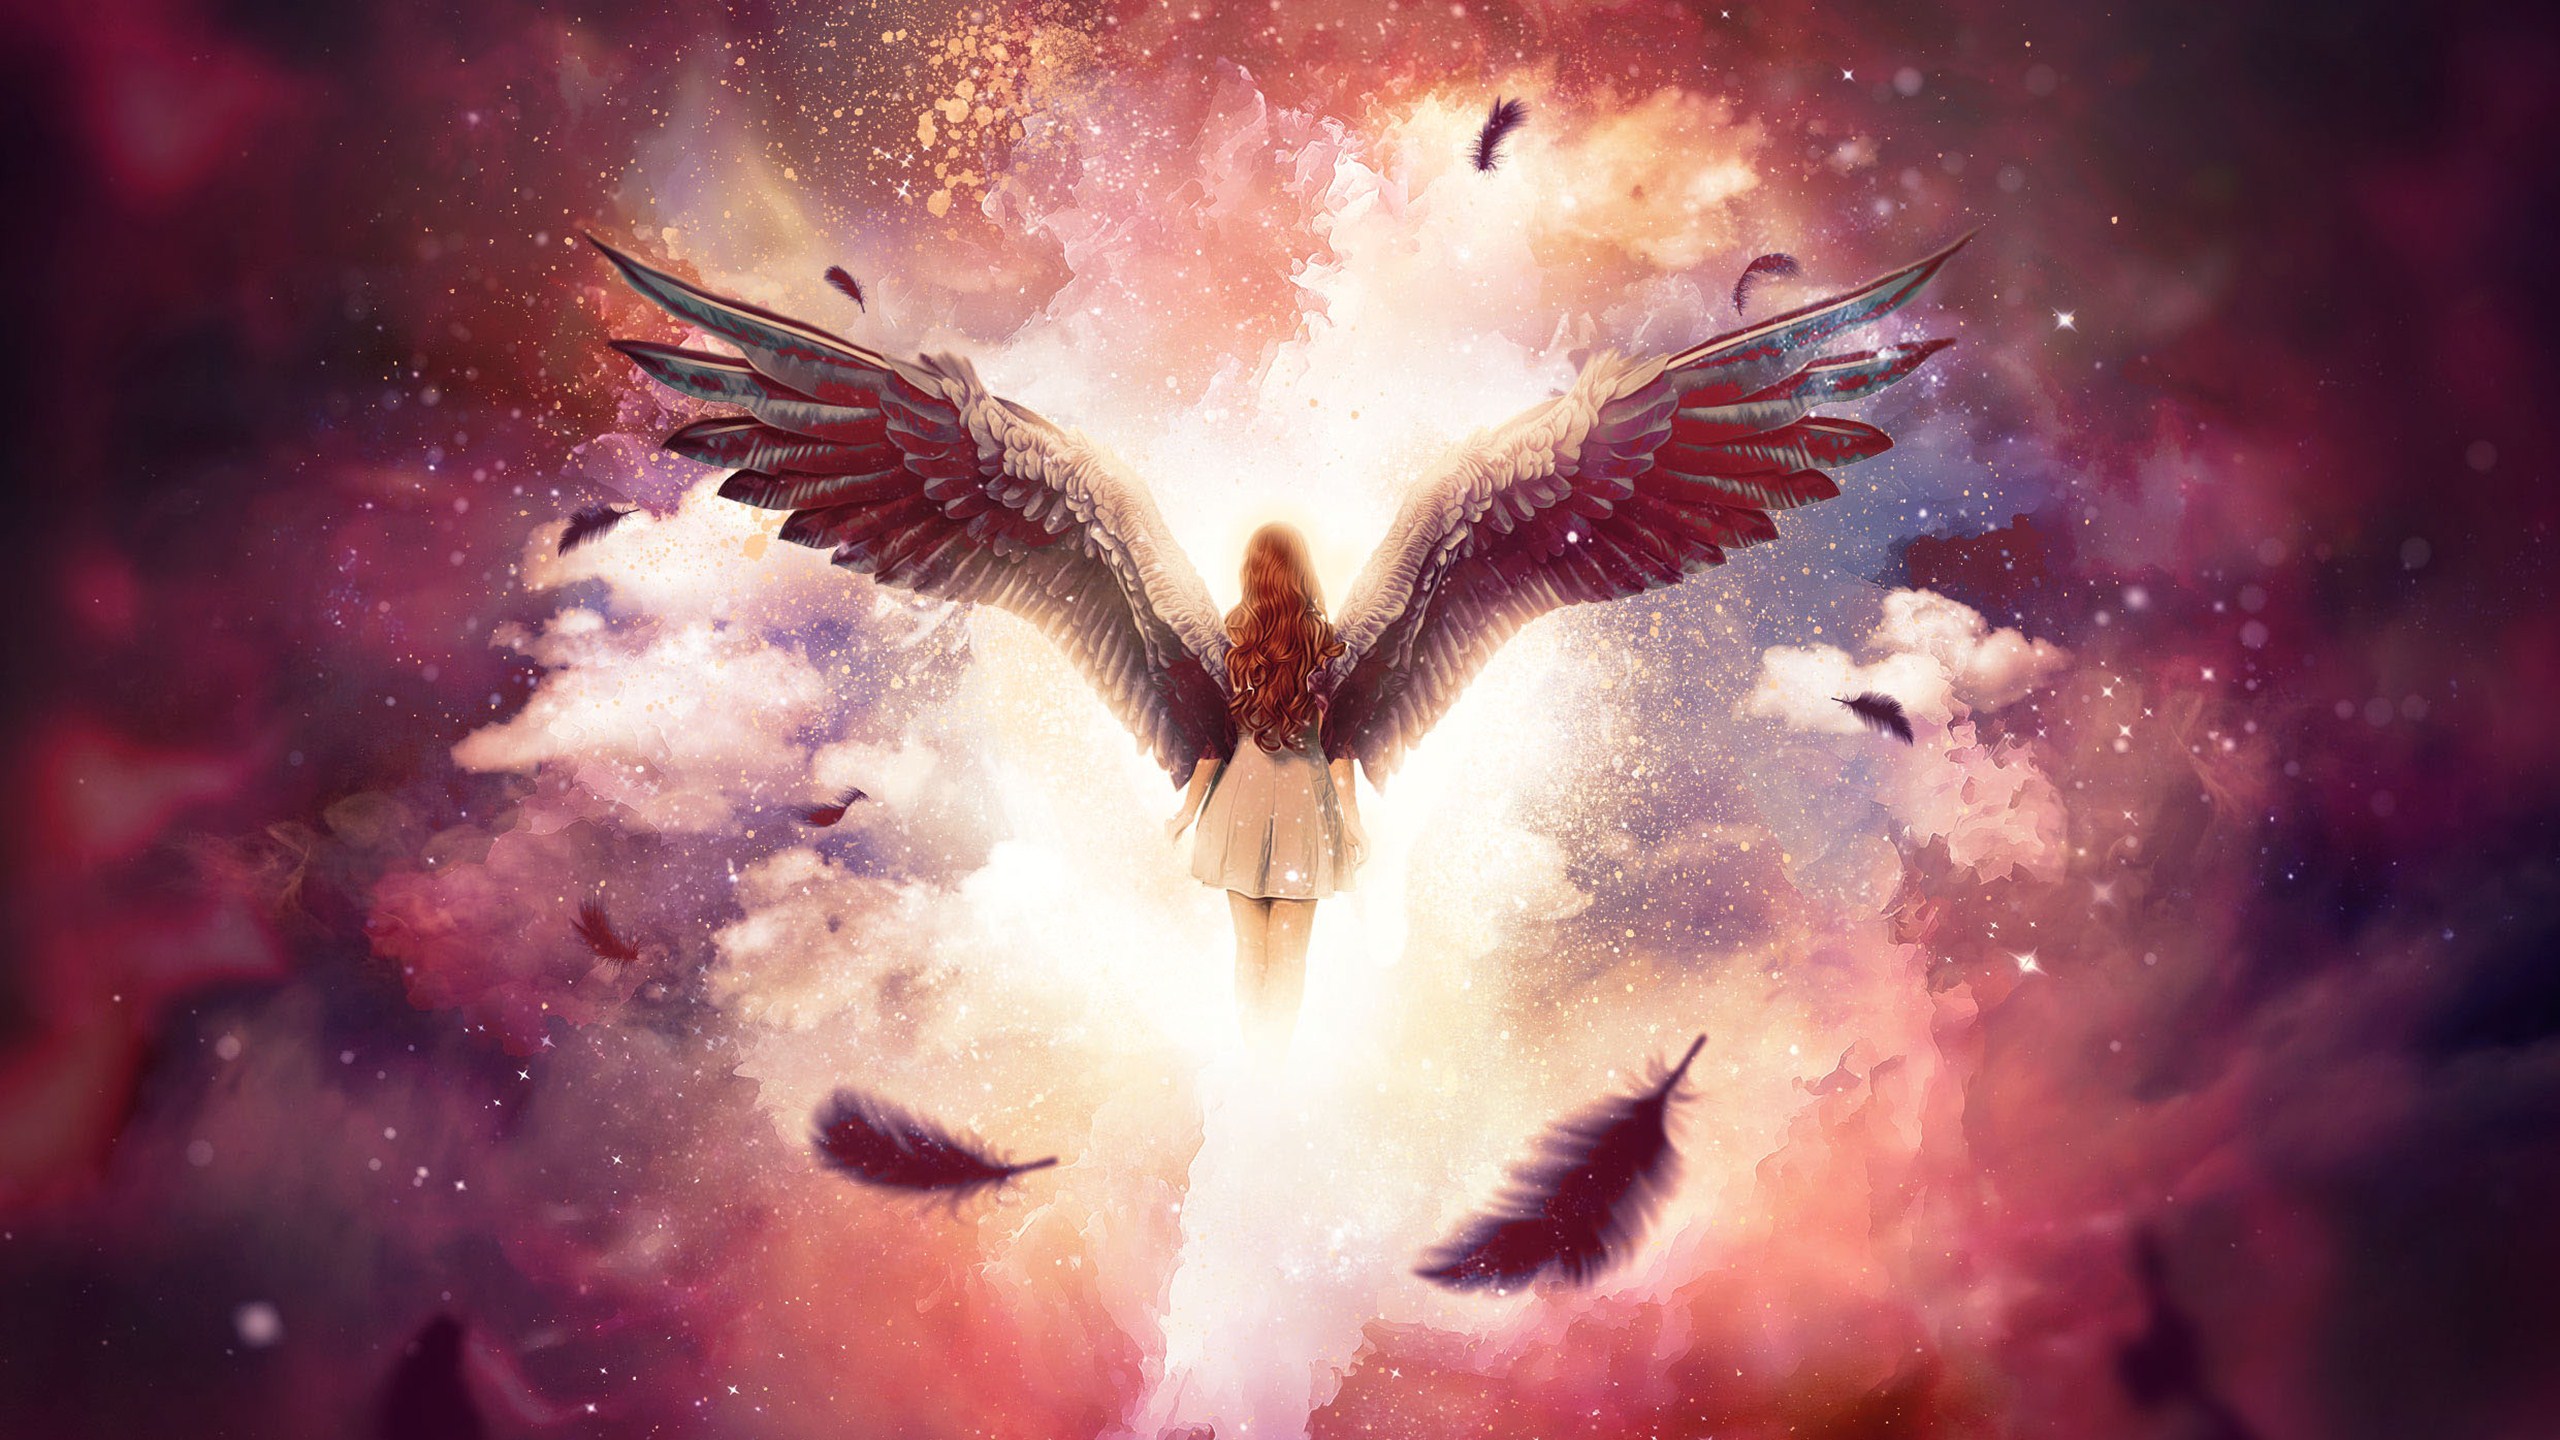 Angel Cloud Wings Woman 2560x1440